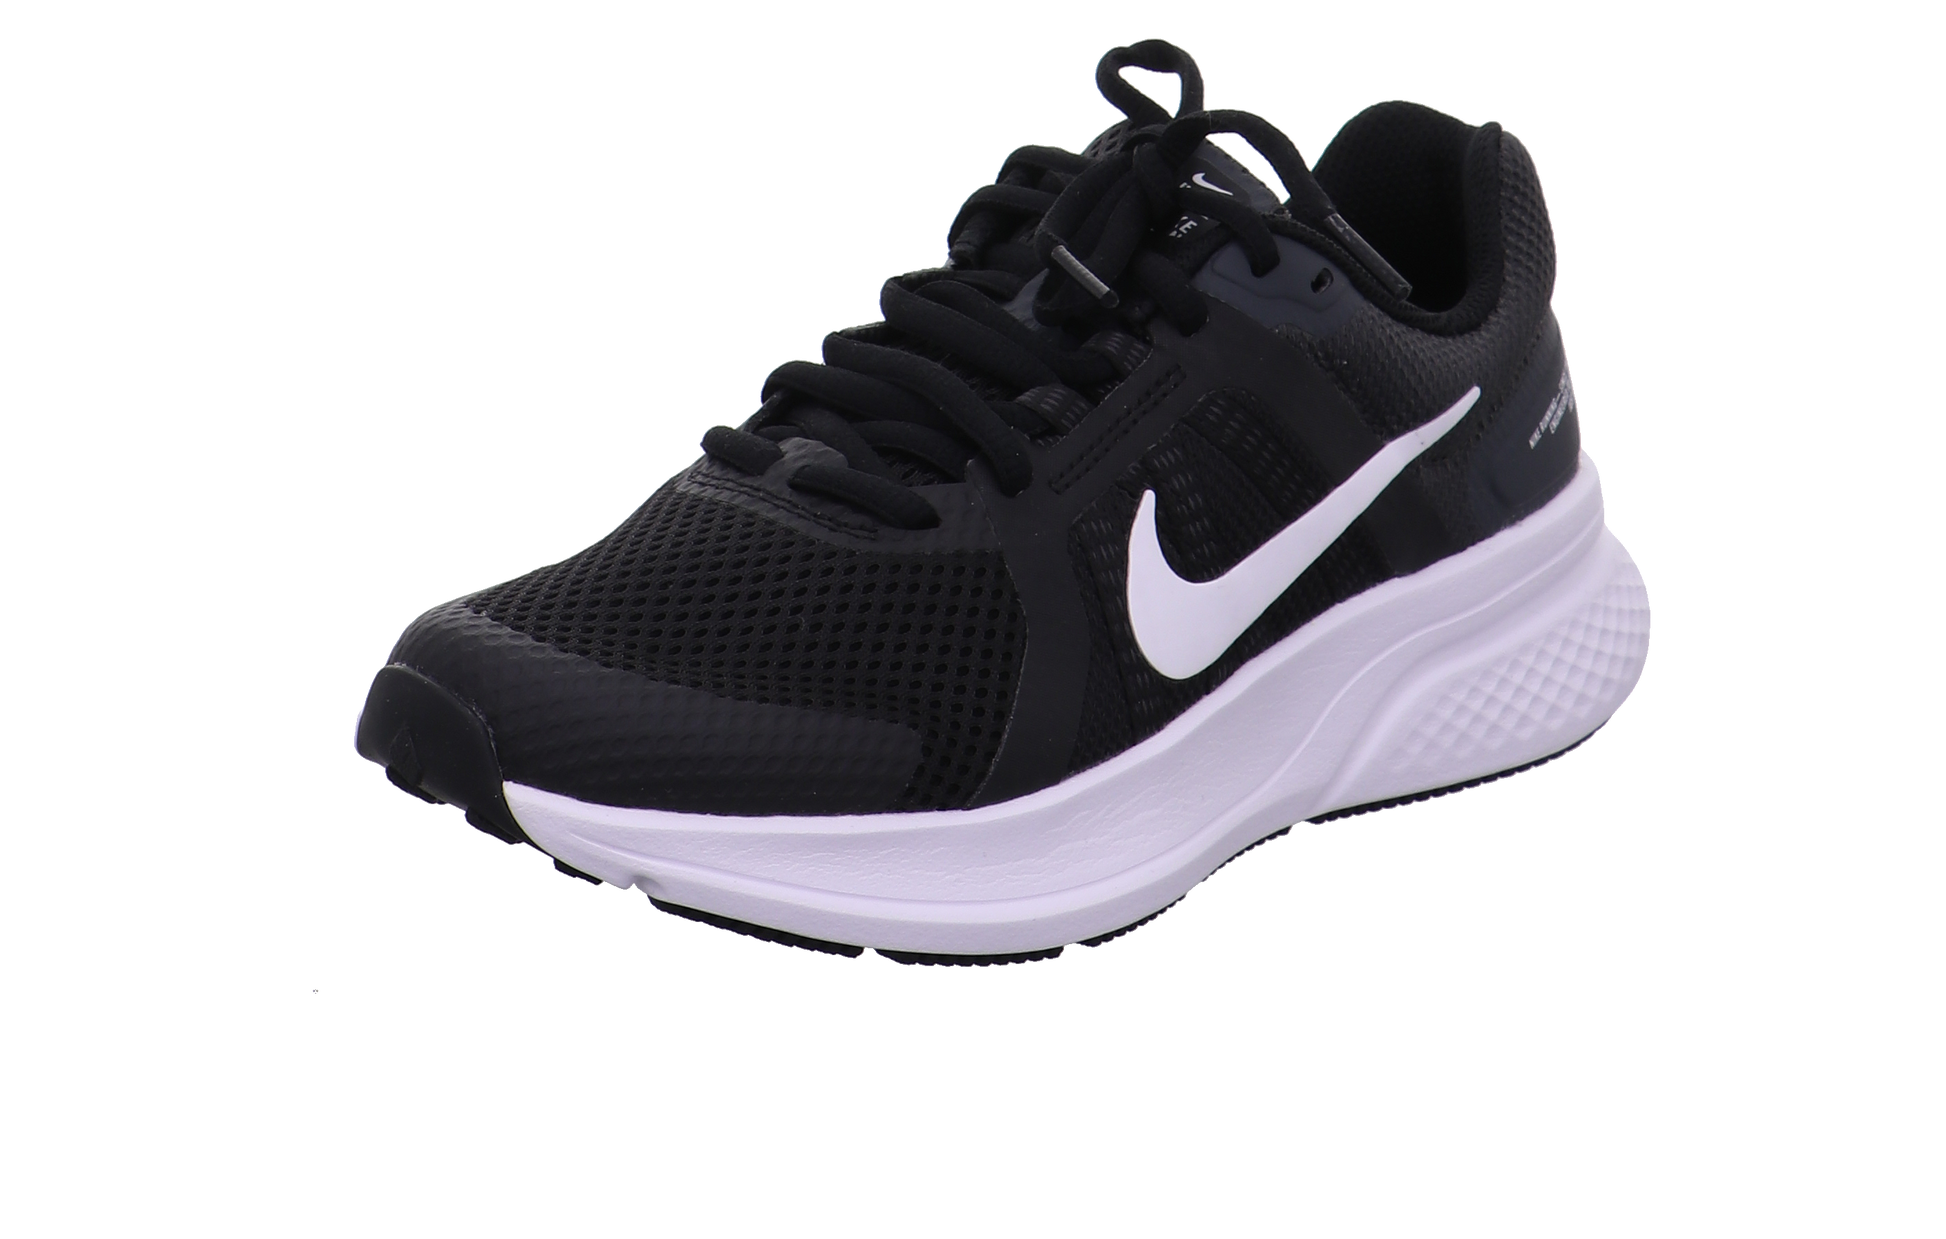 Nike Training und Hallenschuhe schwarz-weiß Bild5